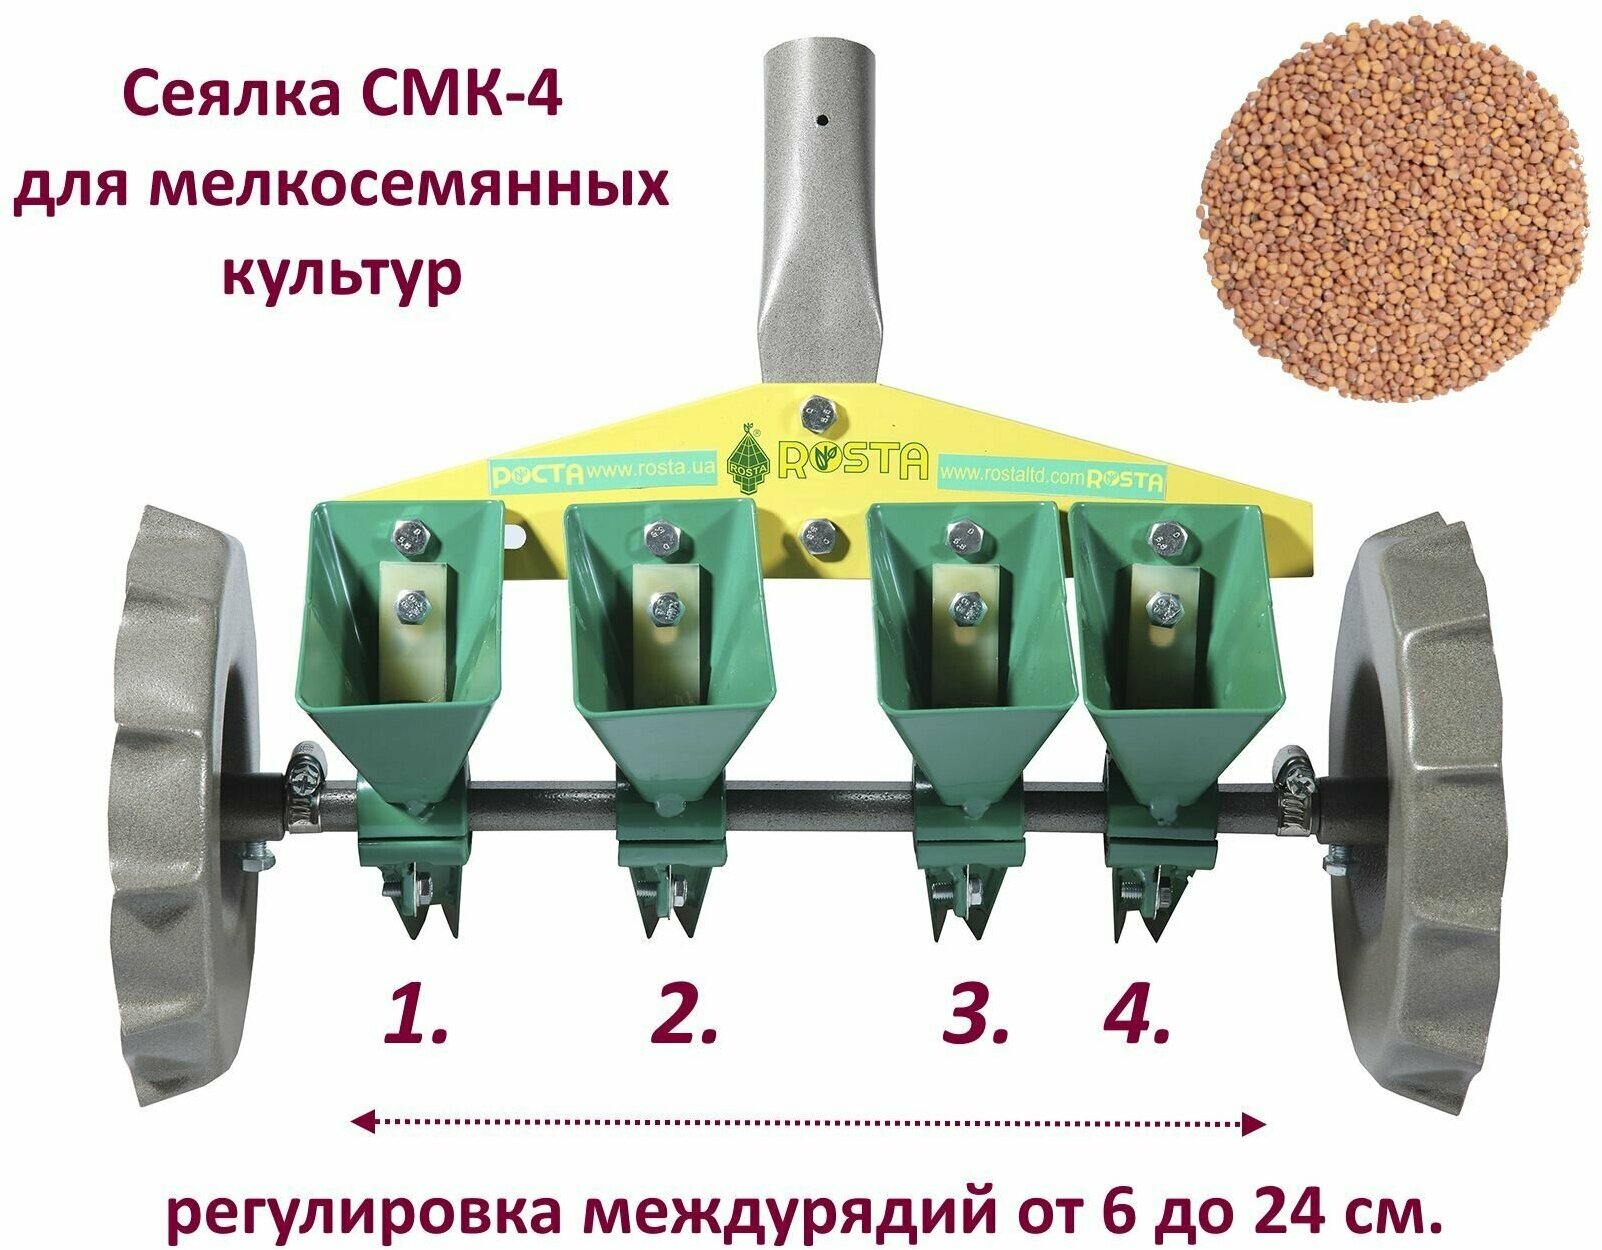 Сеялка СМК-4 (ВПС27/1-10/4) для четырехрядного посева мелкосемянных овощных культур в теплицах, парниках и в открытом грунте. Завод Роста, Украина.